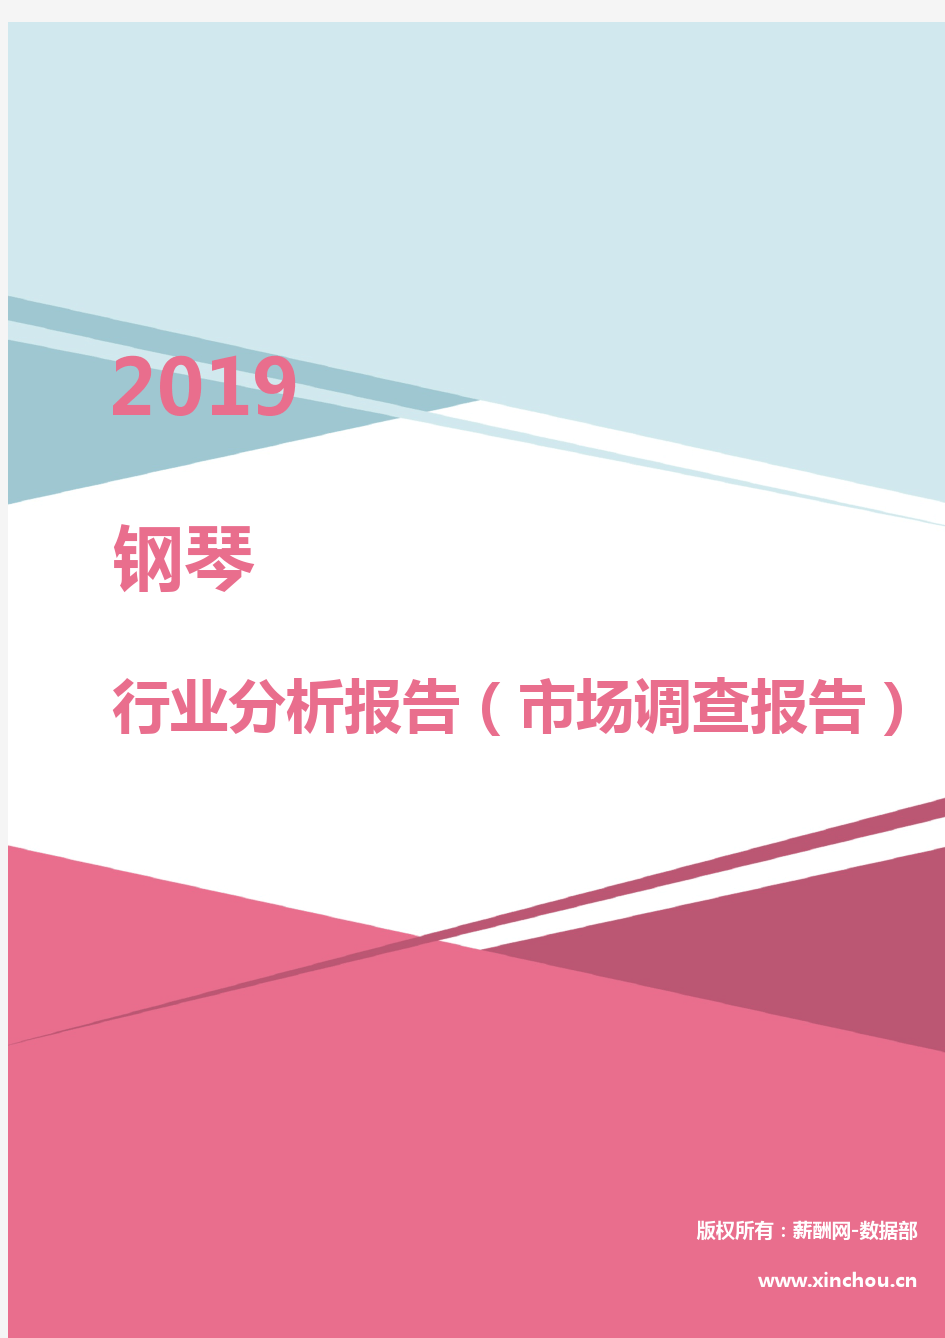 2019年钢琴行业分析报告(市场调查报告)